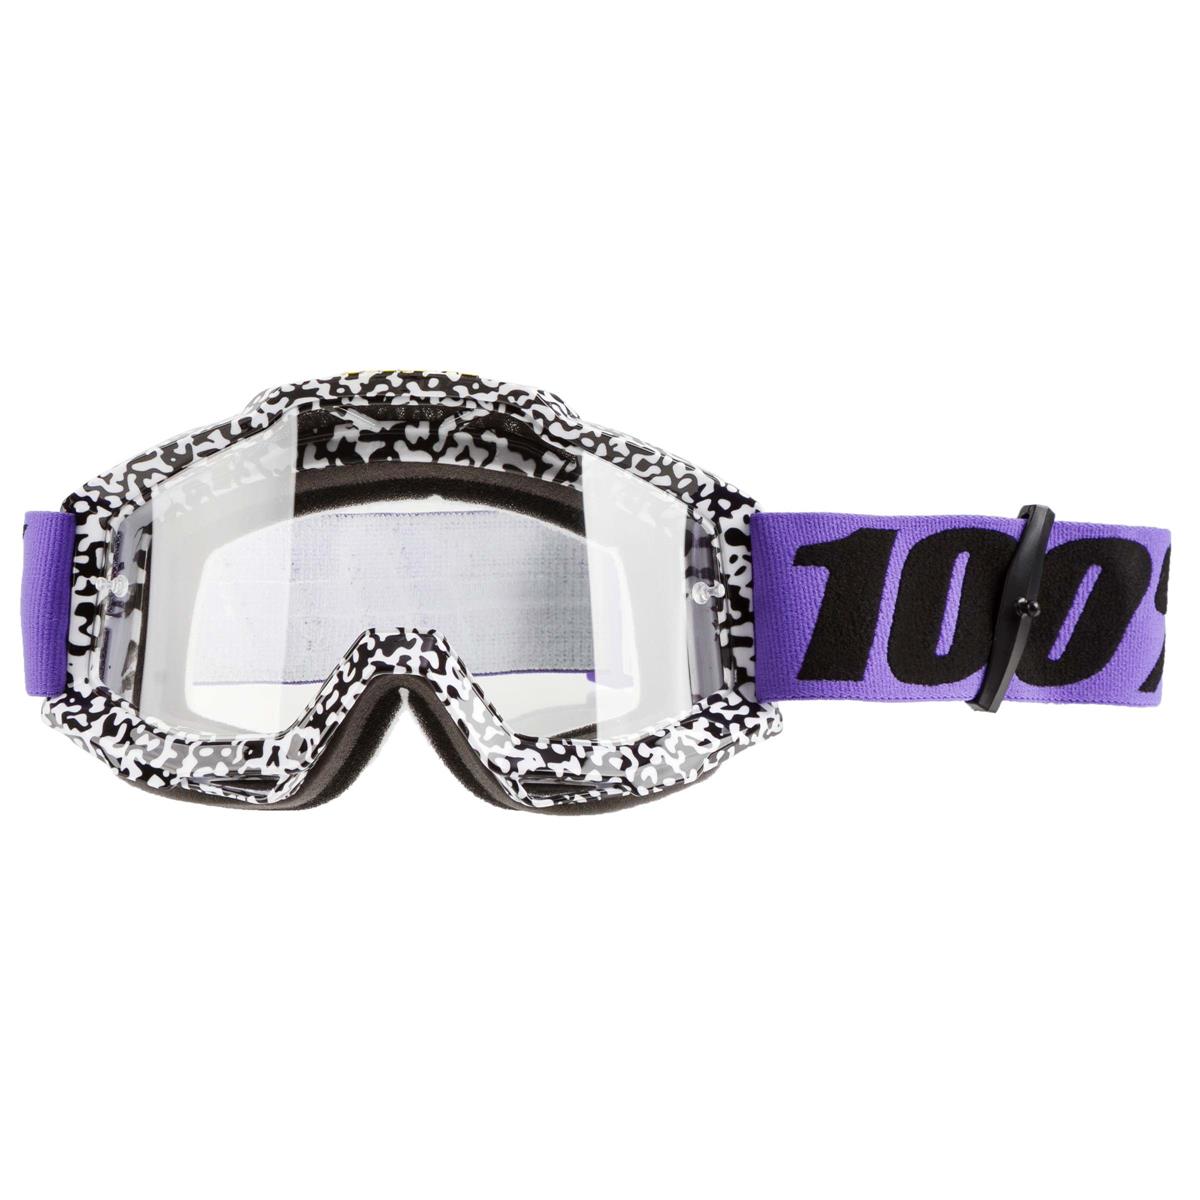 100% Maschera Accuri Brentwood - Trasparente Anti-Fog